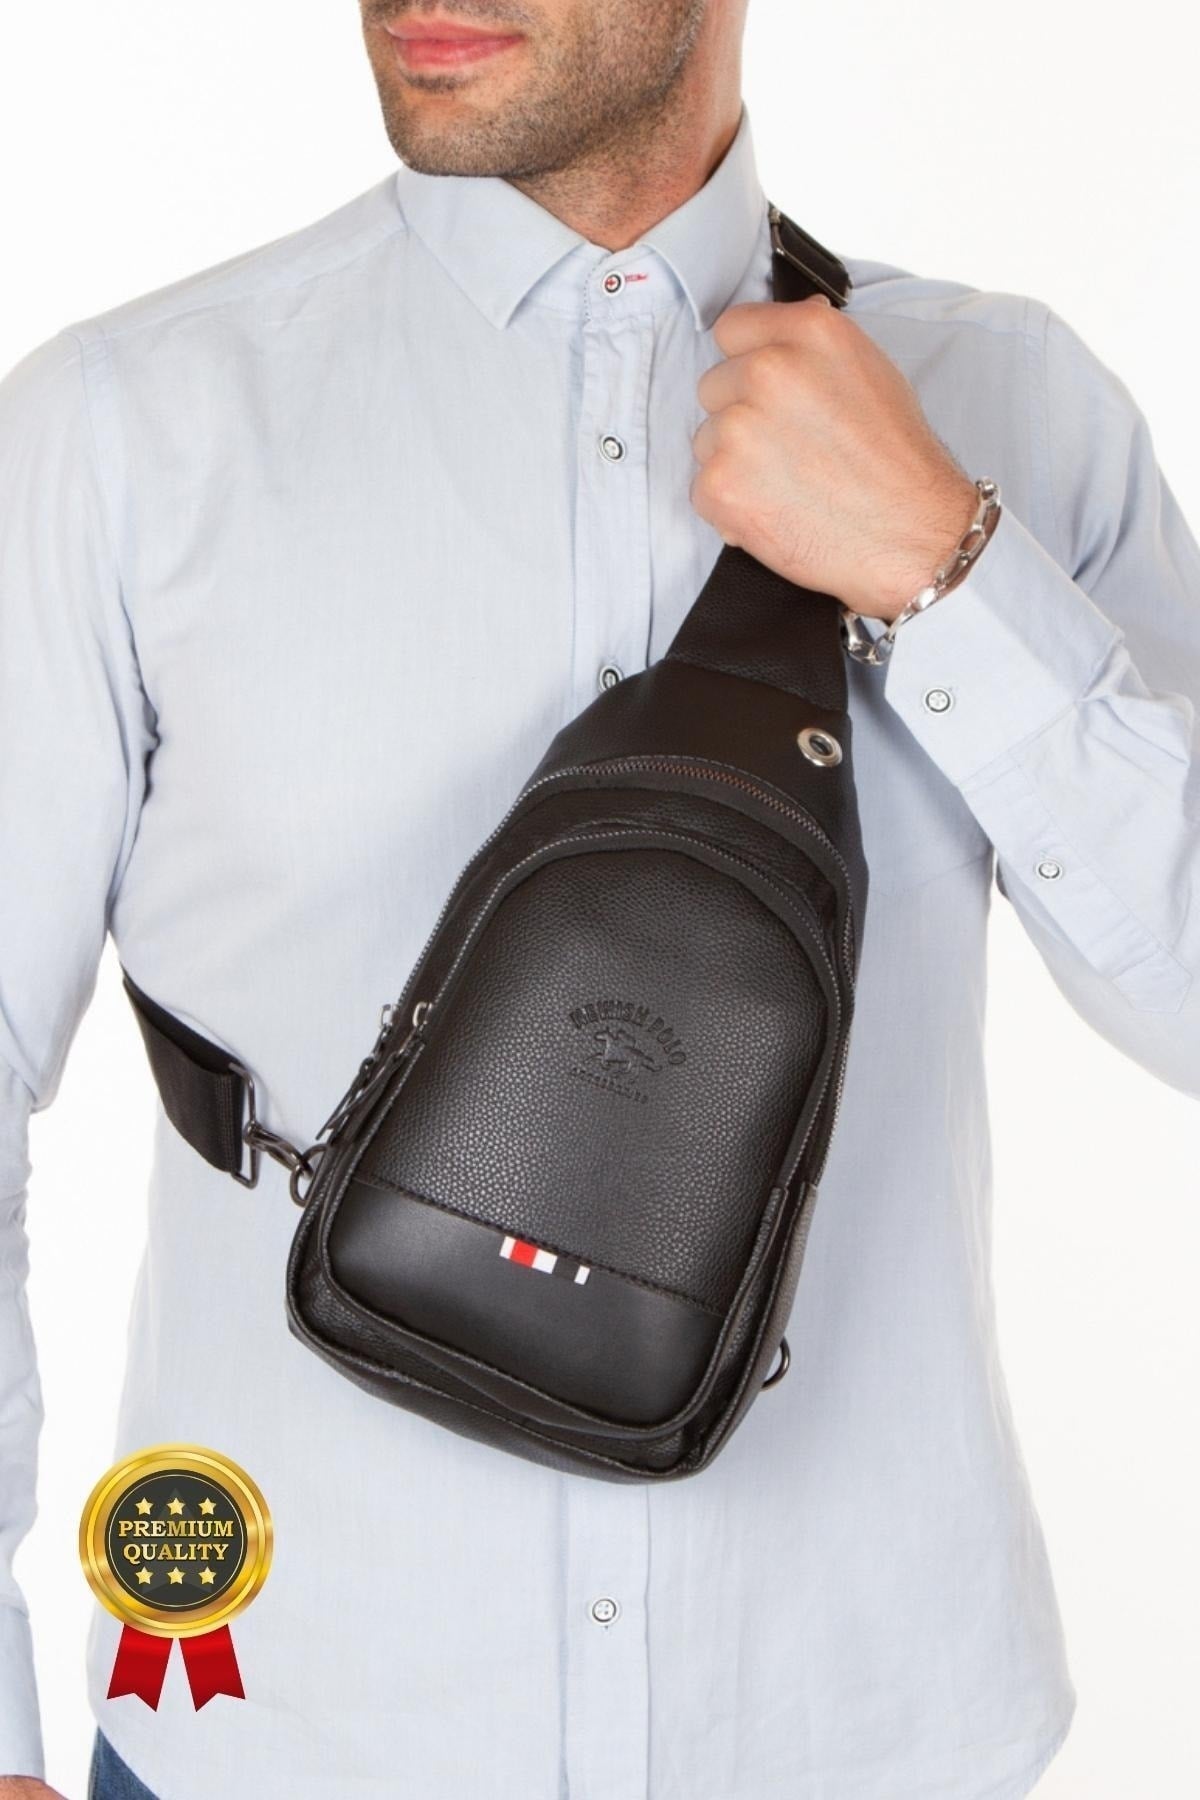 Black Unisex Cross Adjustable Strap Shoulder Bag Lt-6547